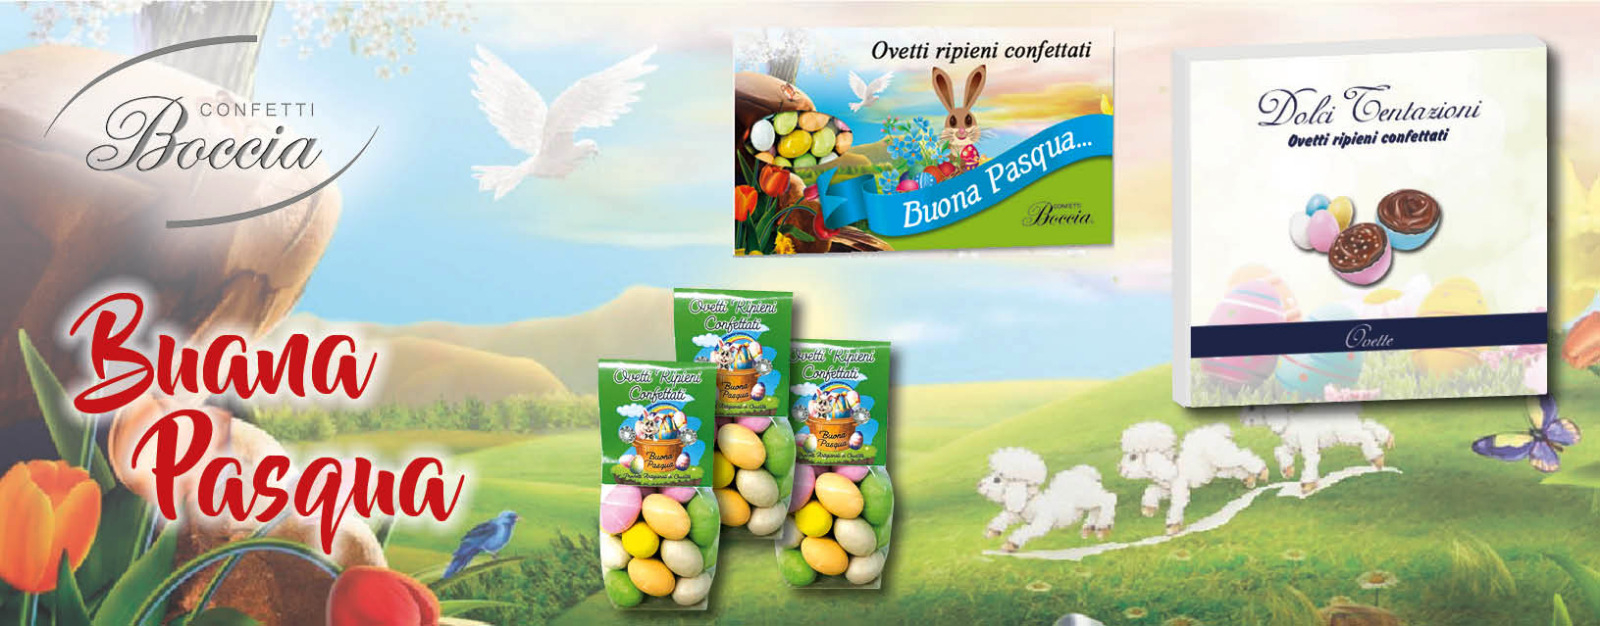 DLM - Confetti al Cioccolato Artigianali Boccia confezione da 1 KG_Giallo -  Italiano